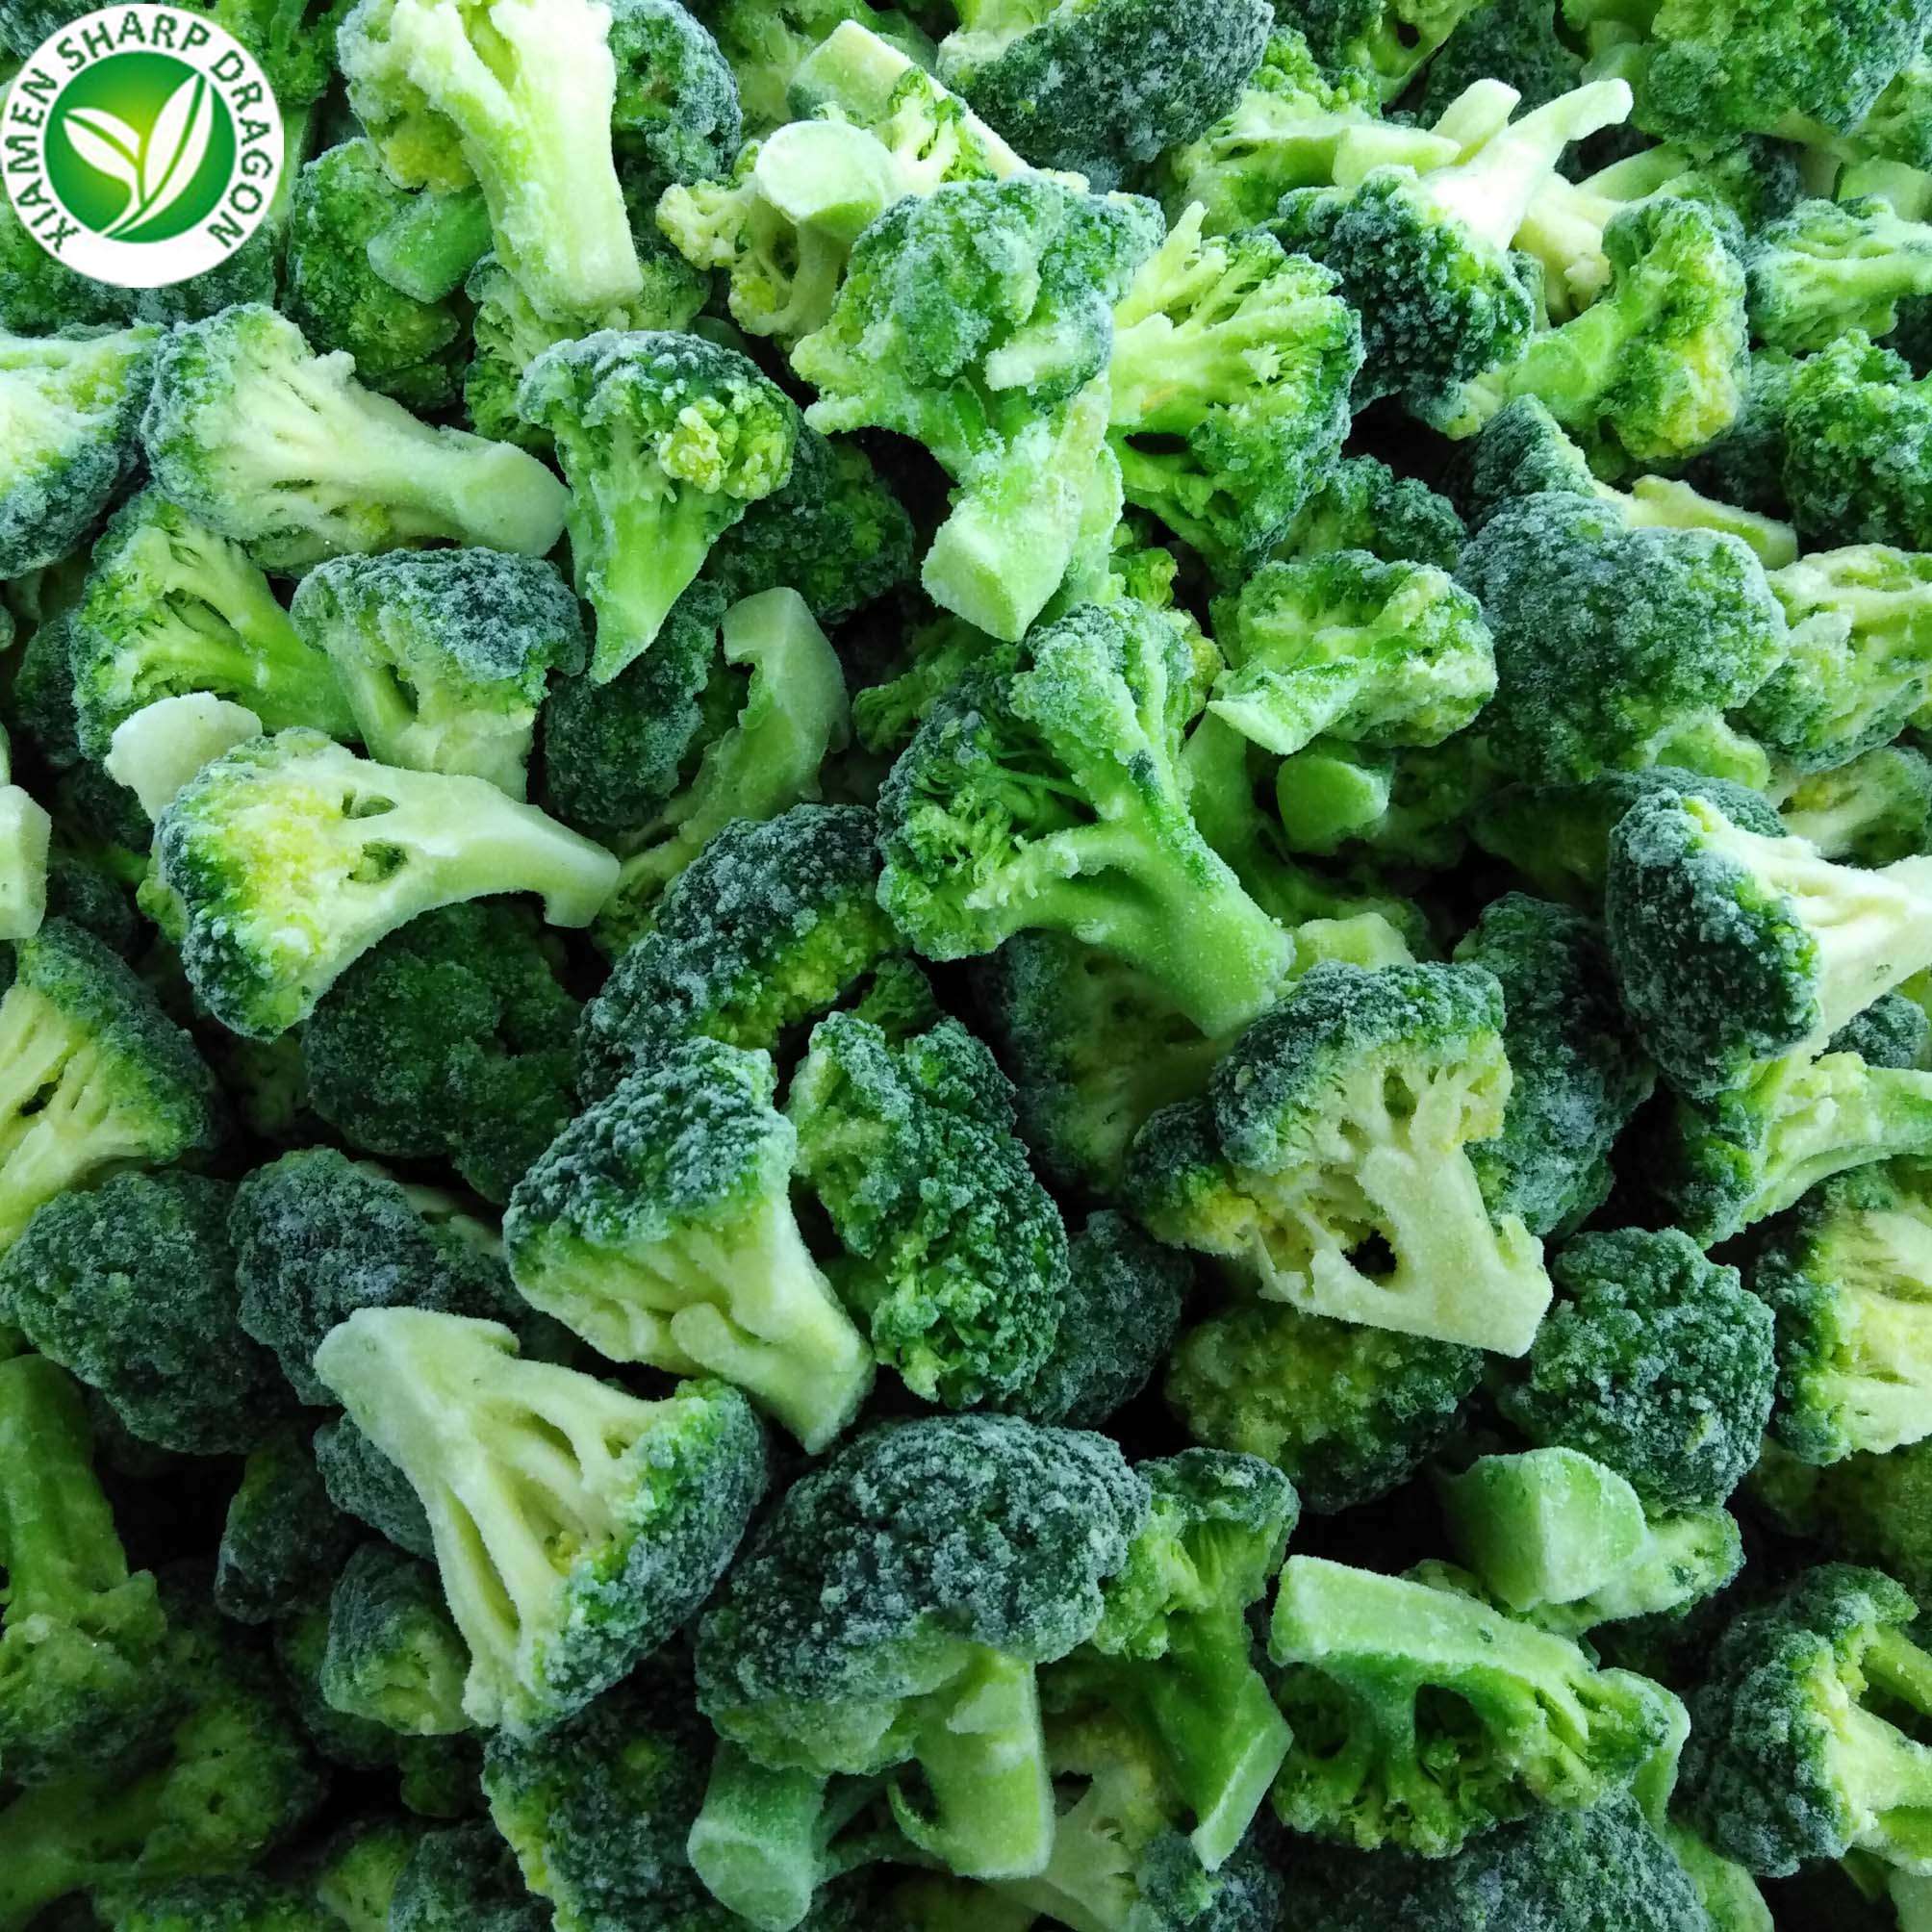 bulk iqf frozen broccoli sprouts